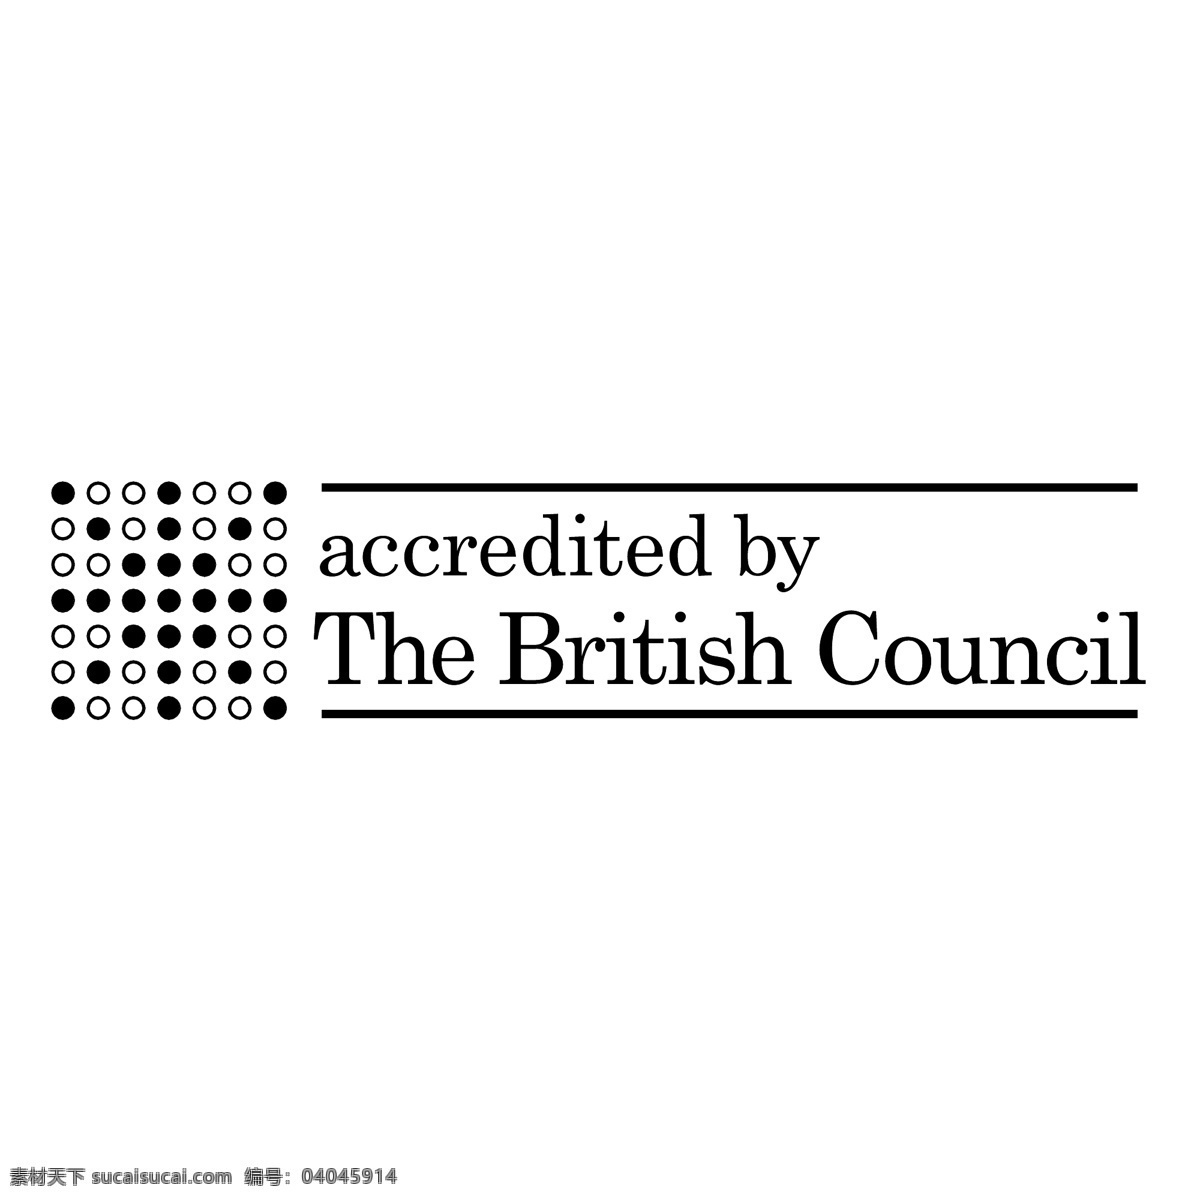 英国文化委员会 标志 英国 英国的 英国议会 委员会 文化 协会 矢量 logo 向量 艺术 理事会 议会自由 矢量图 建筑家居